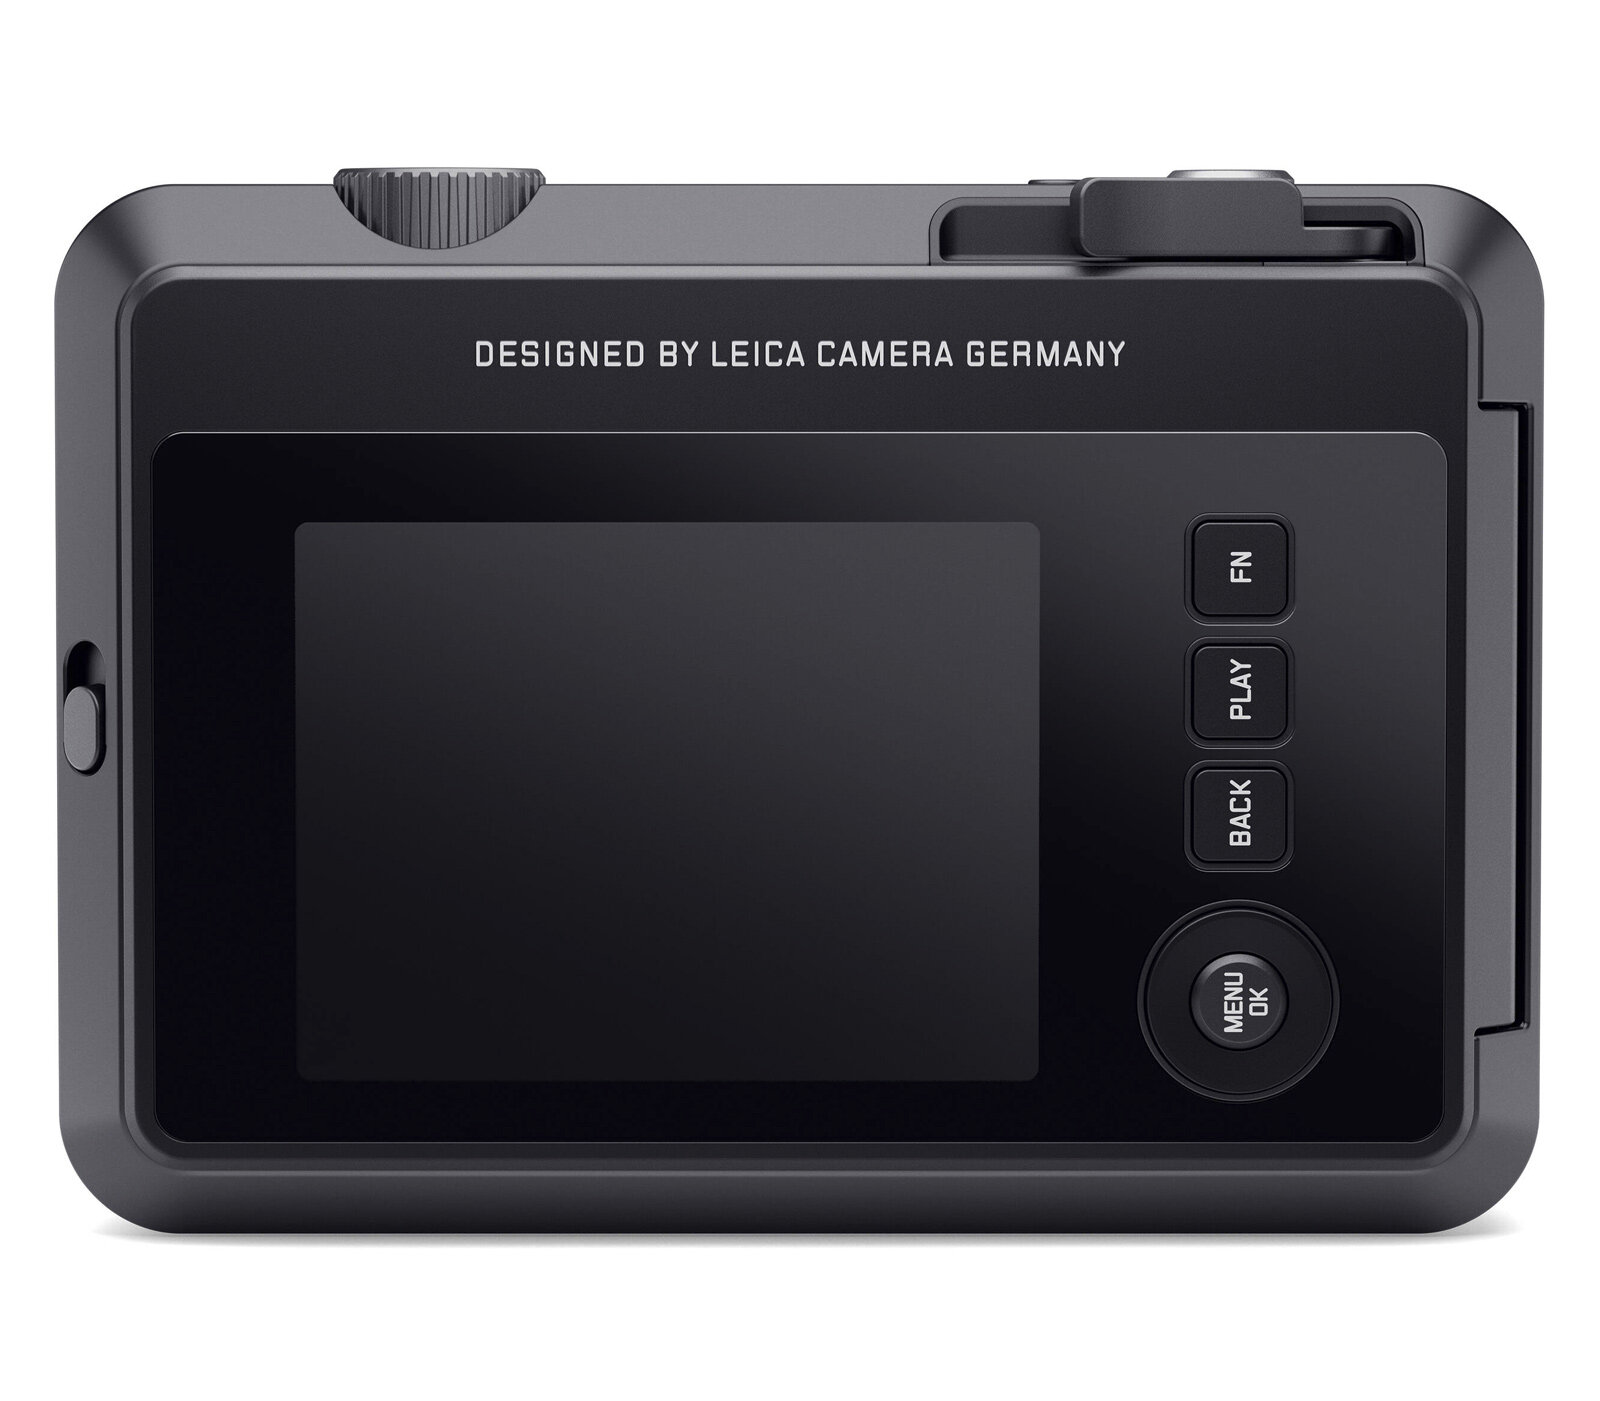 Фотоаппарат моментальной печати Leica SOFORT 2, красный